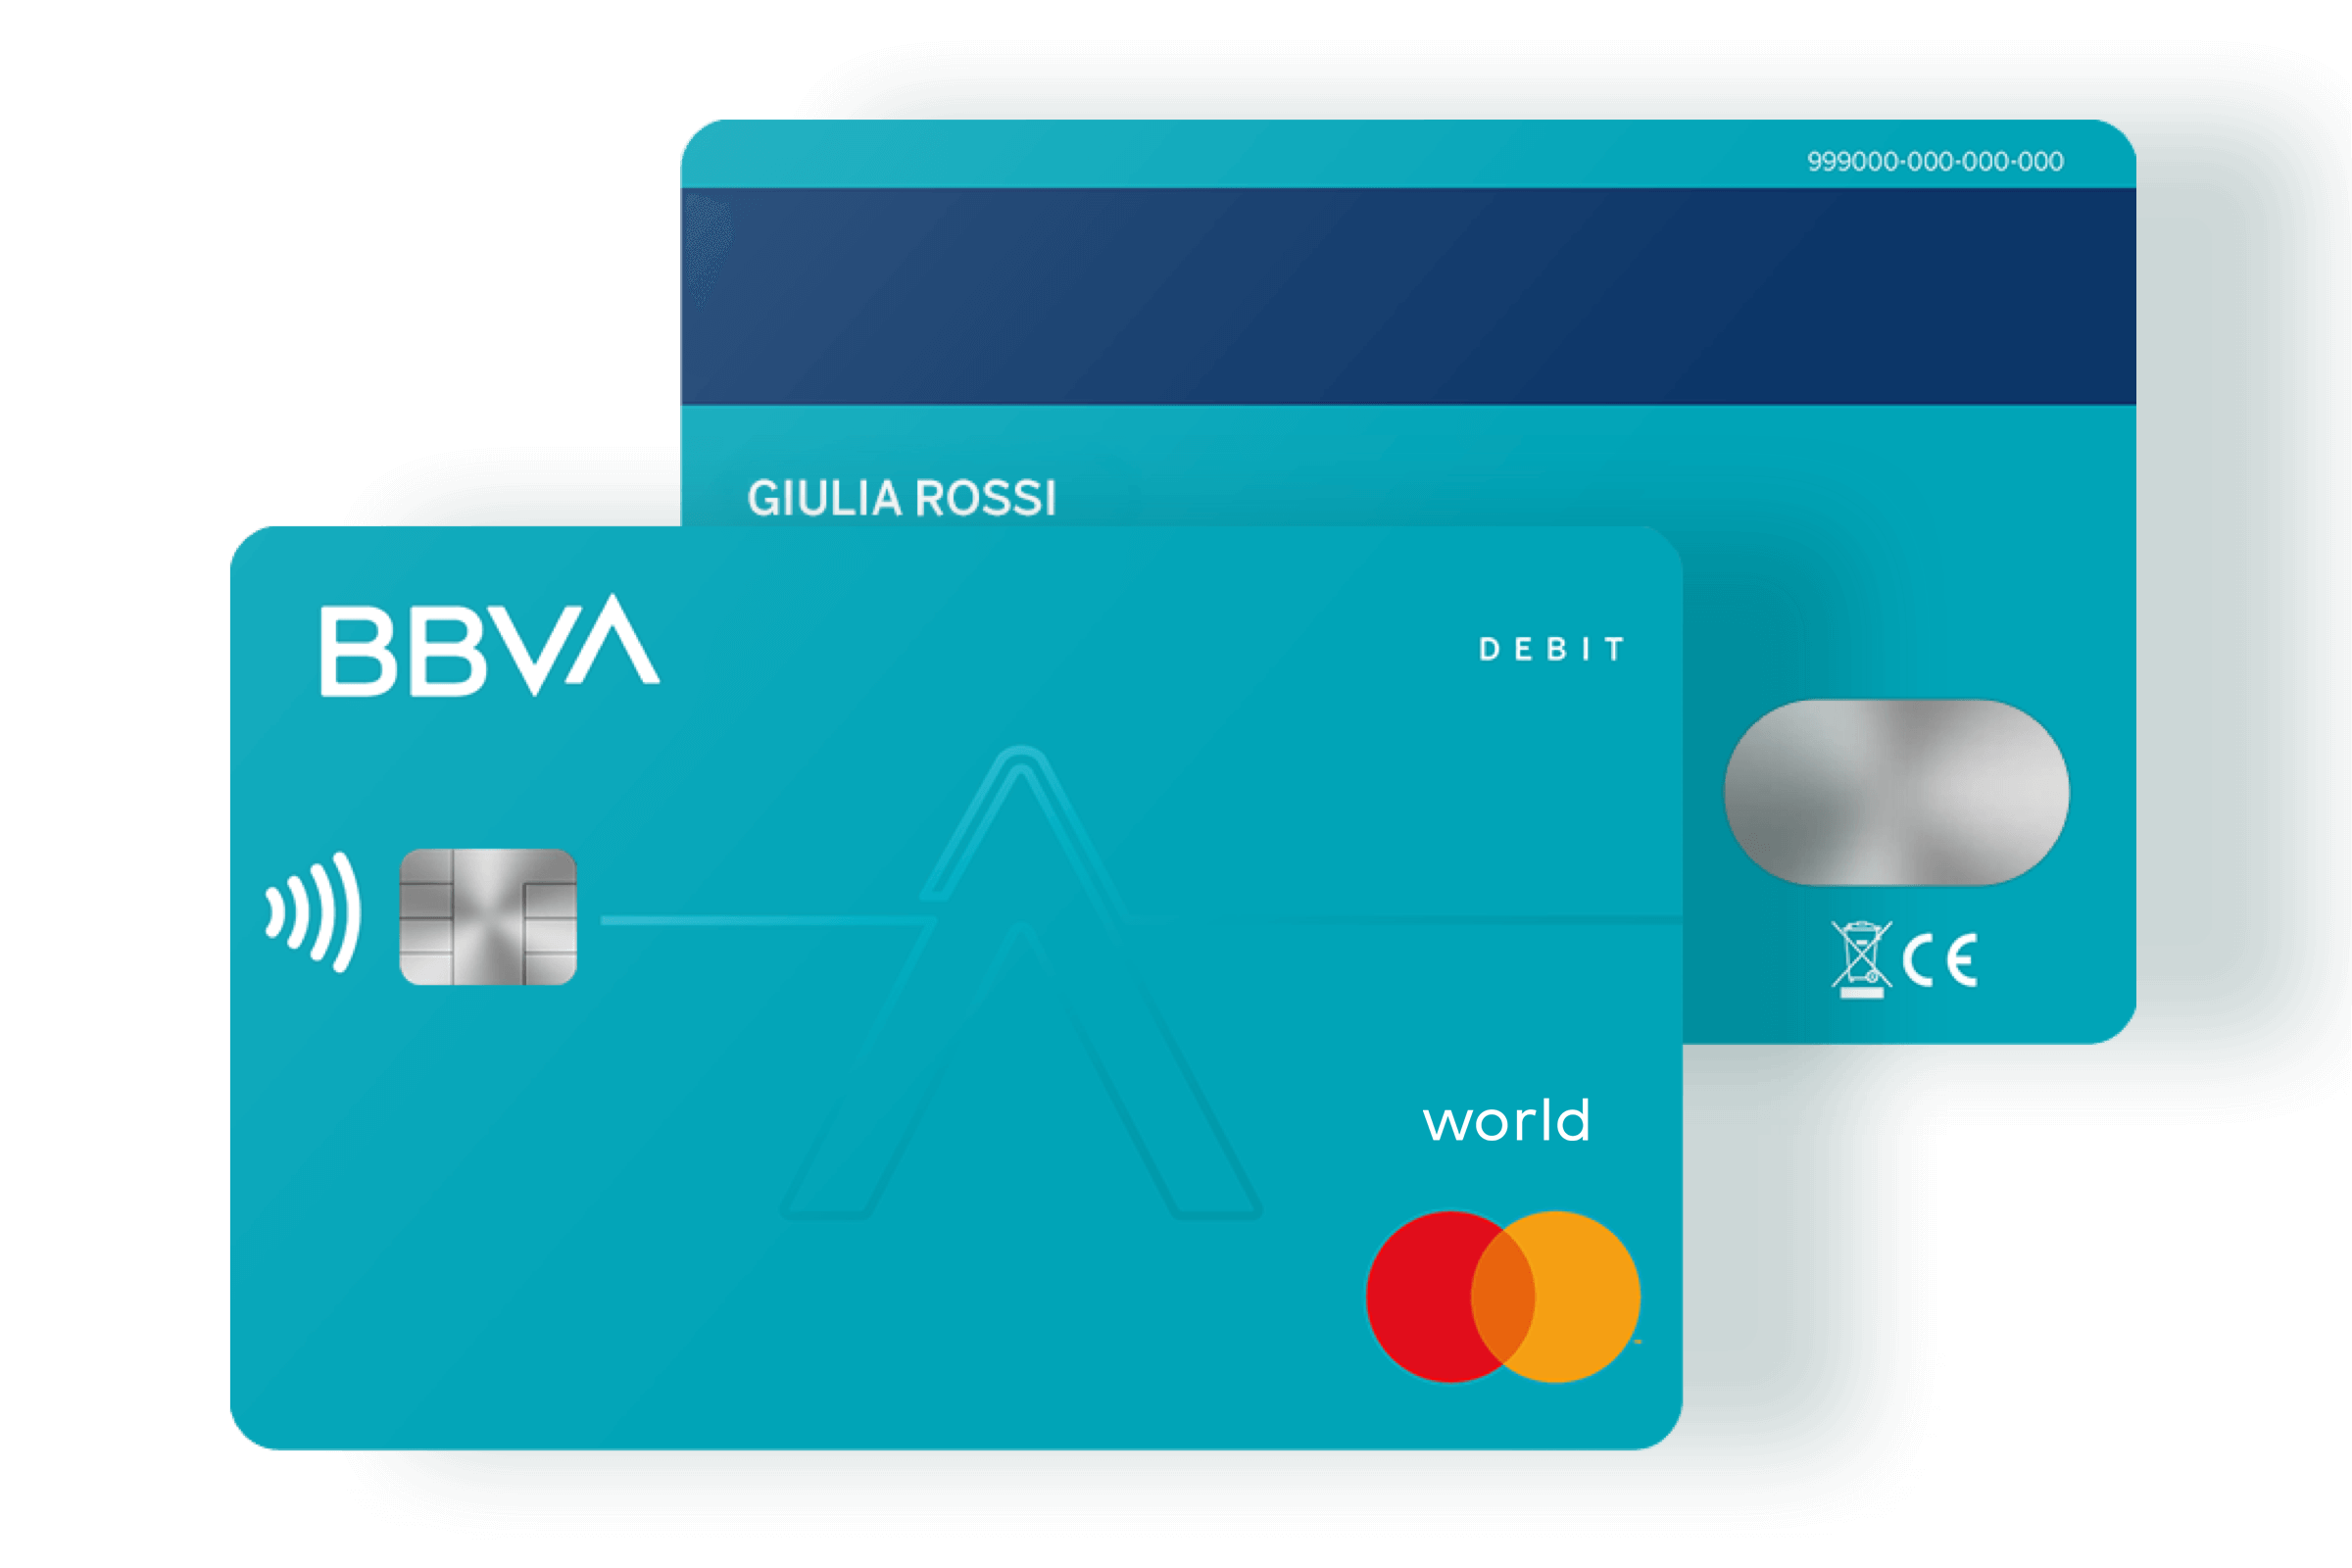 BBVA CVV card